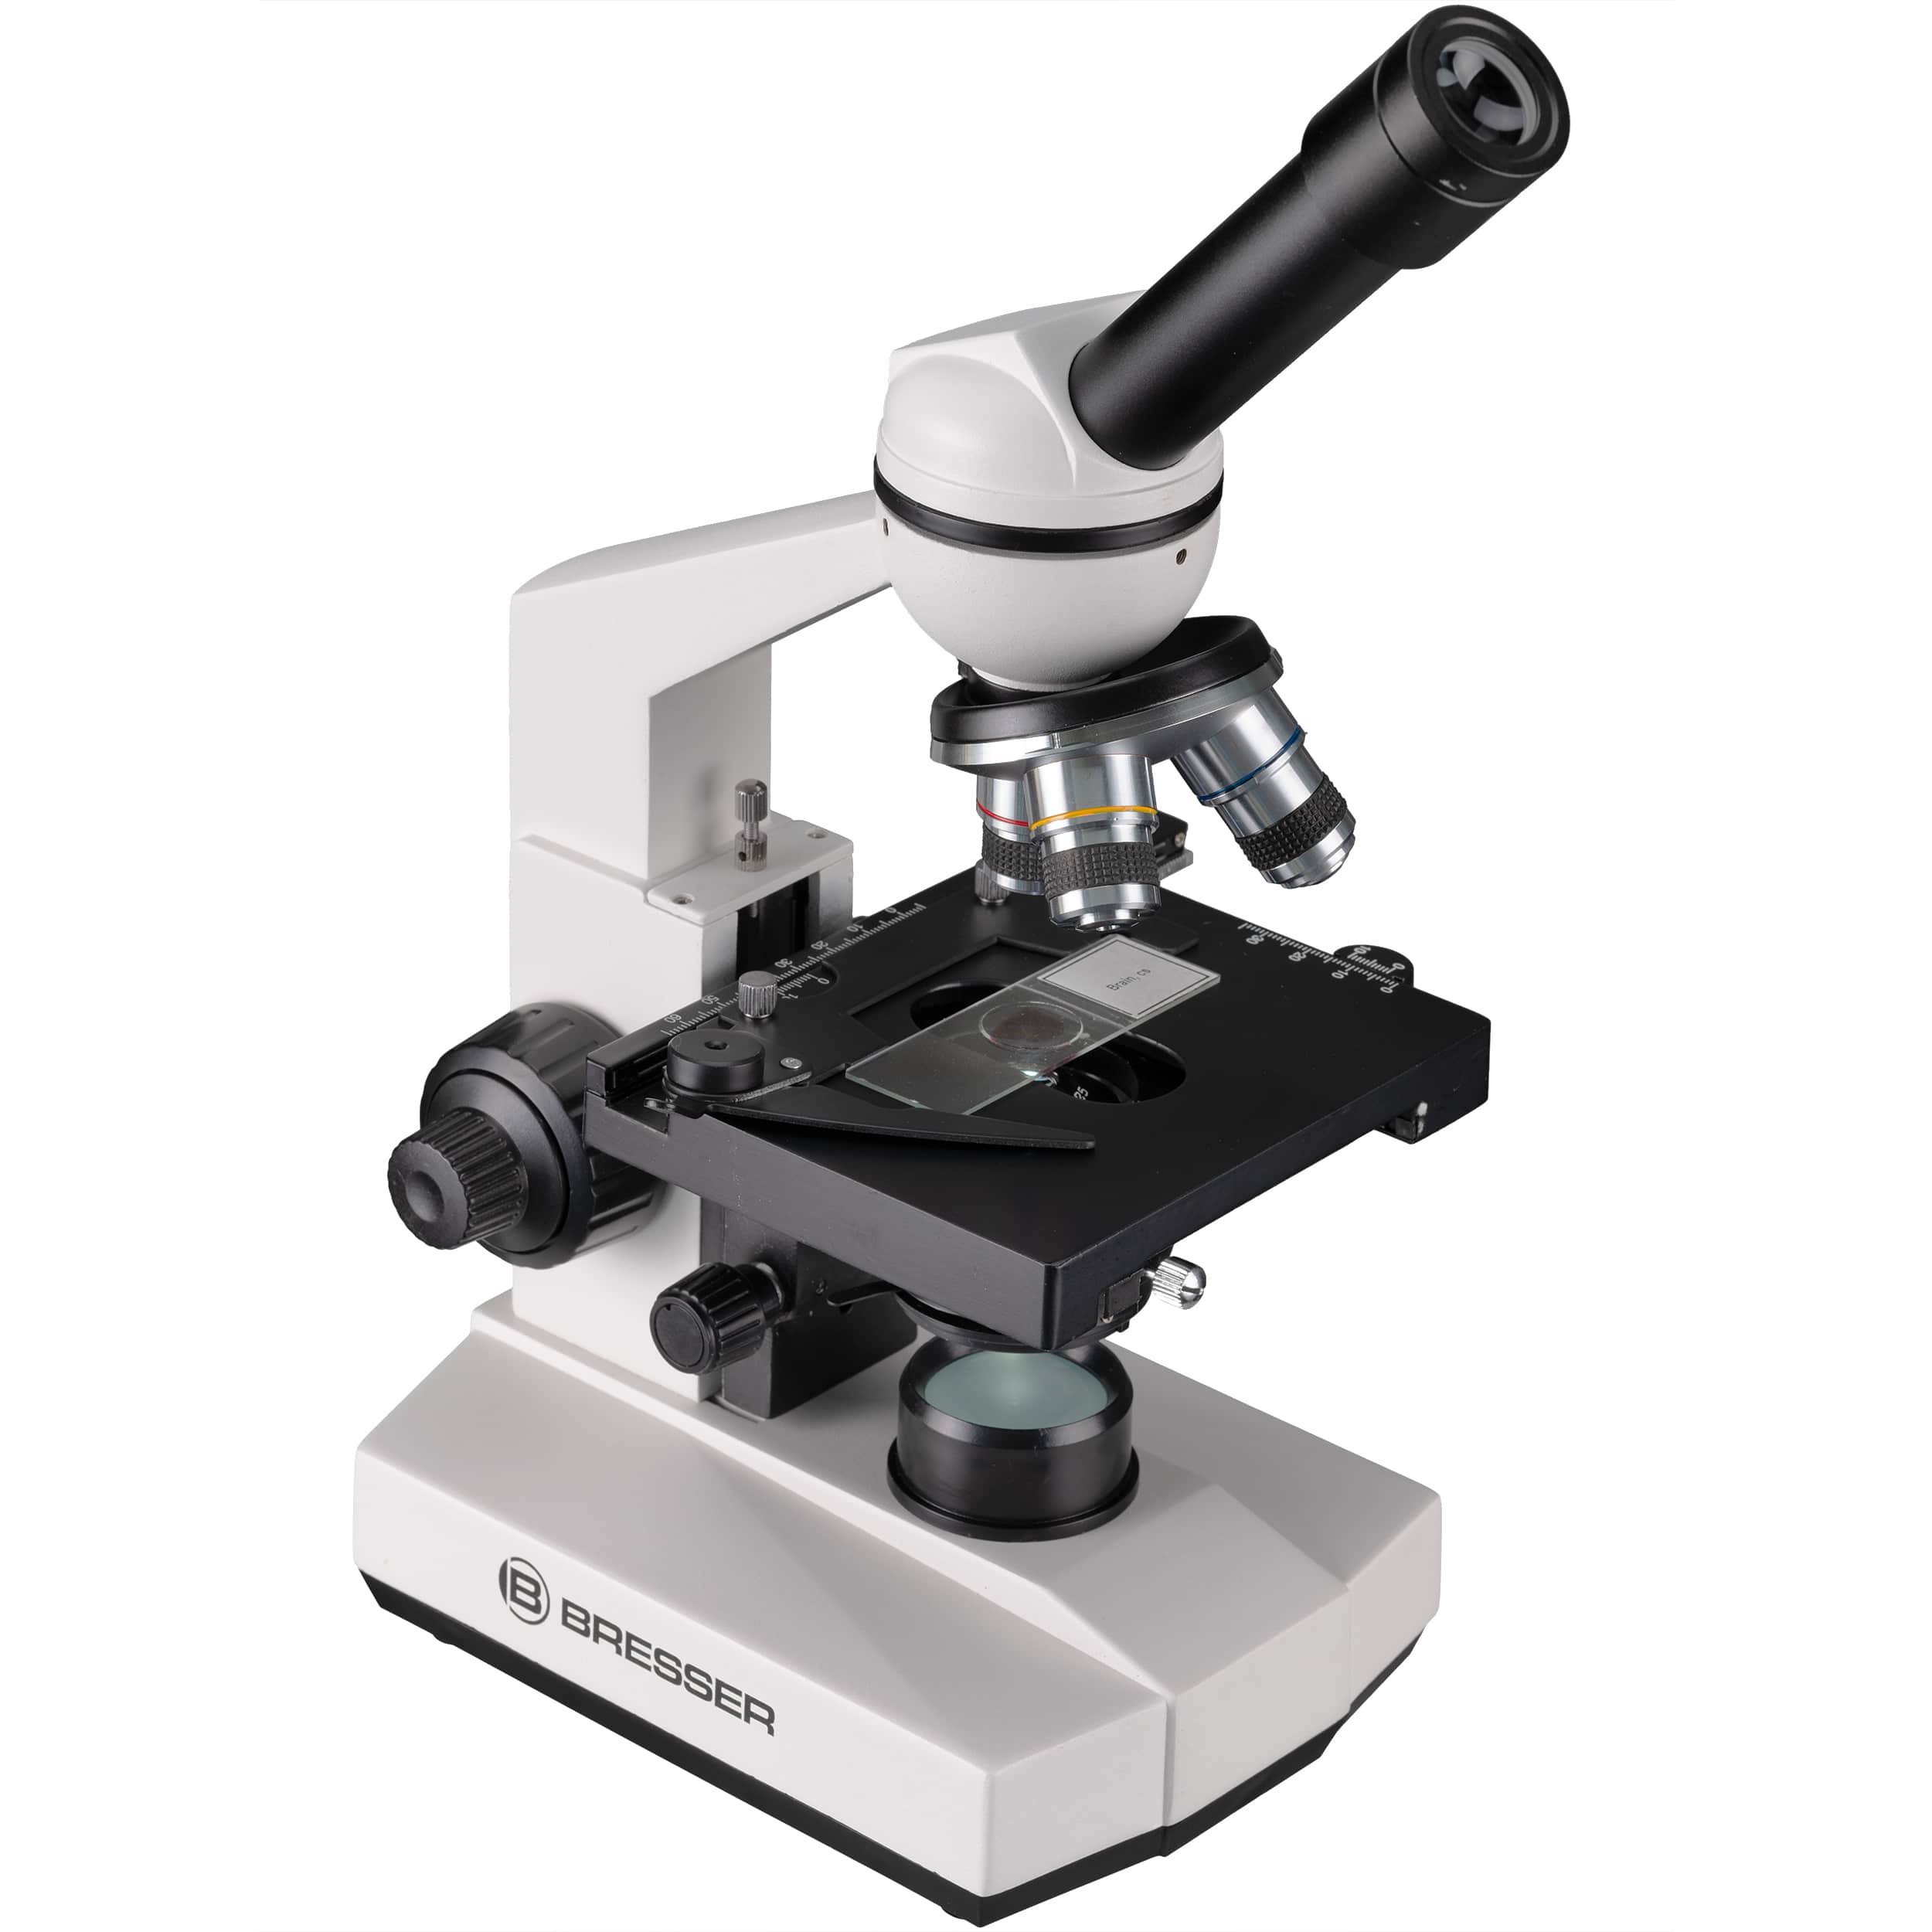  Microscopio per la scuola compatto e ben attrezzato nella pratica valigetta
 
  